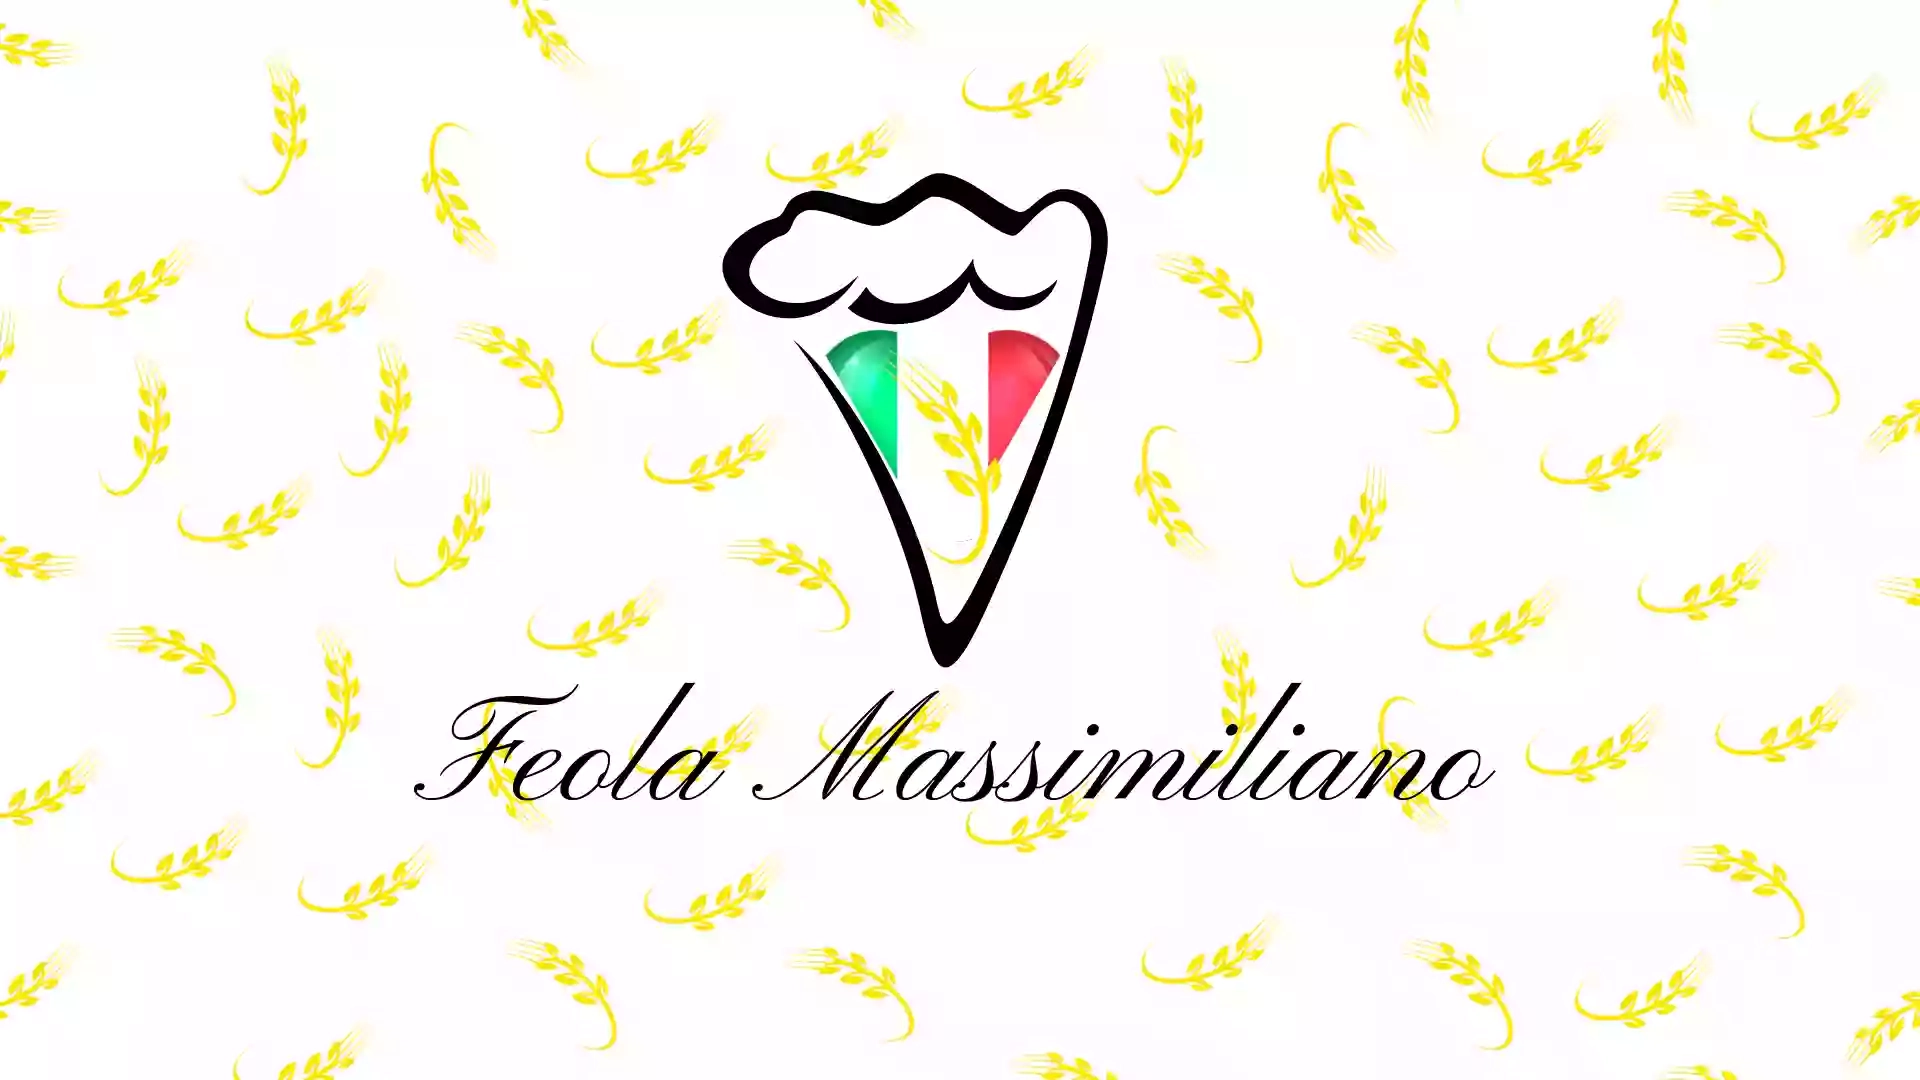 Feola Massimiliano